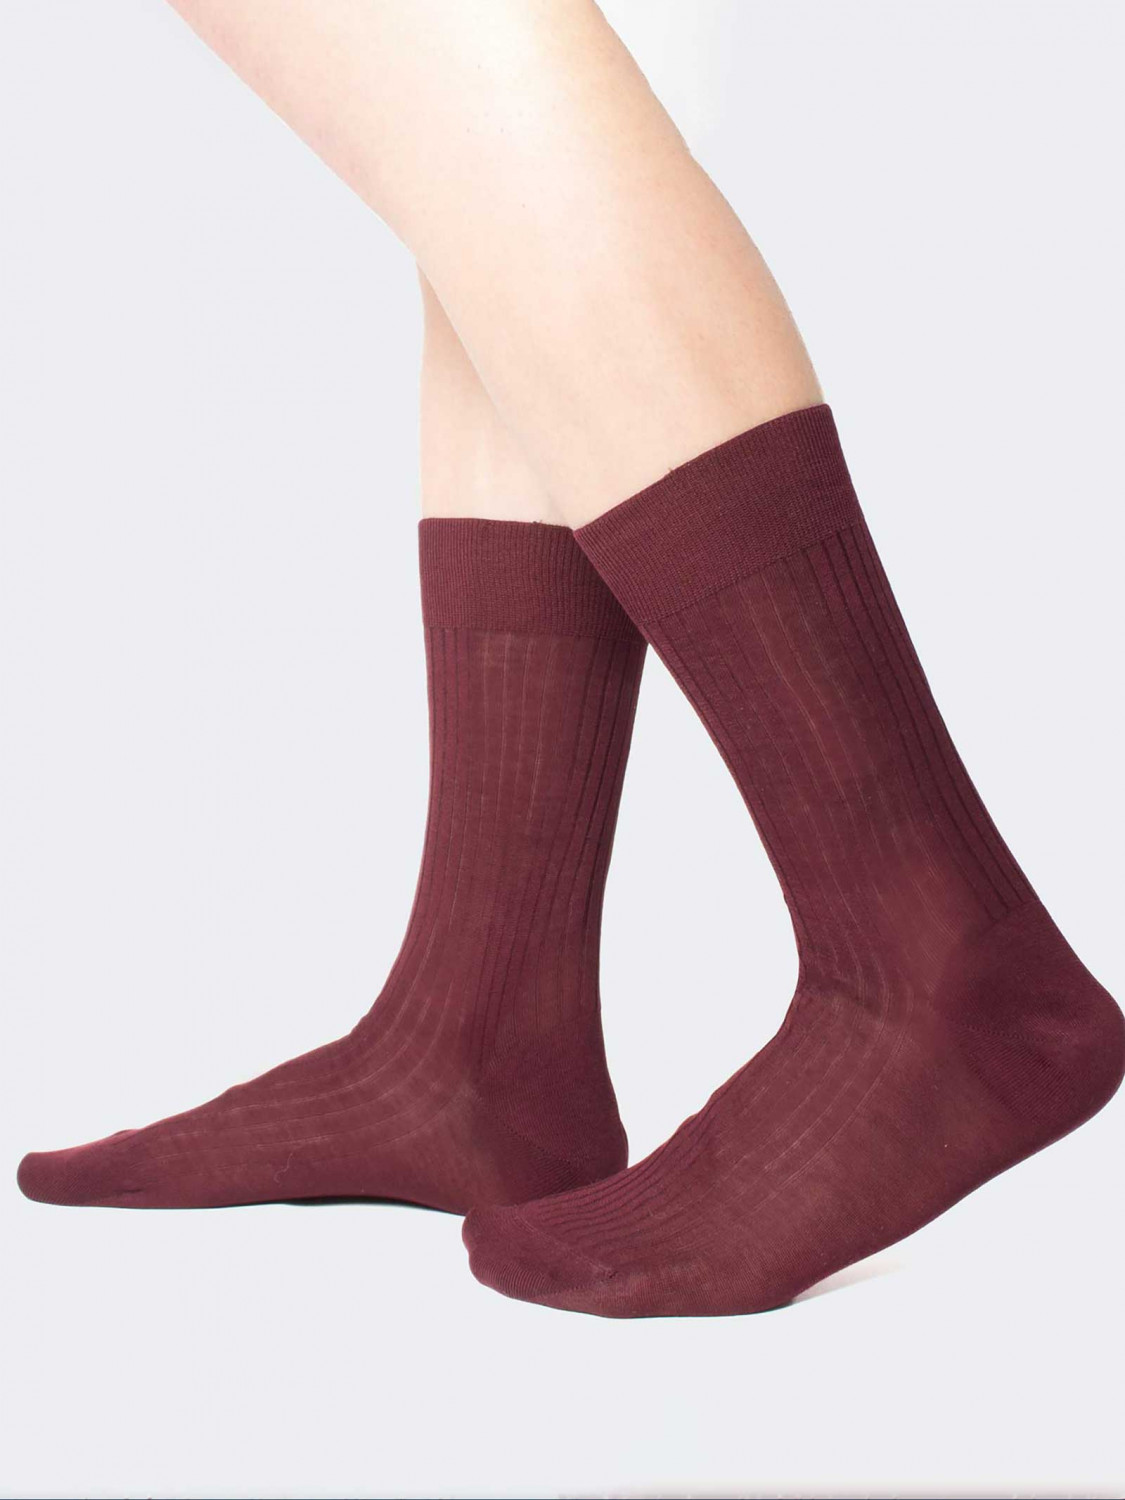 100% Filo di Scozia wide rib calf socks - Made in Italy